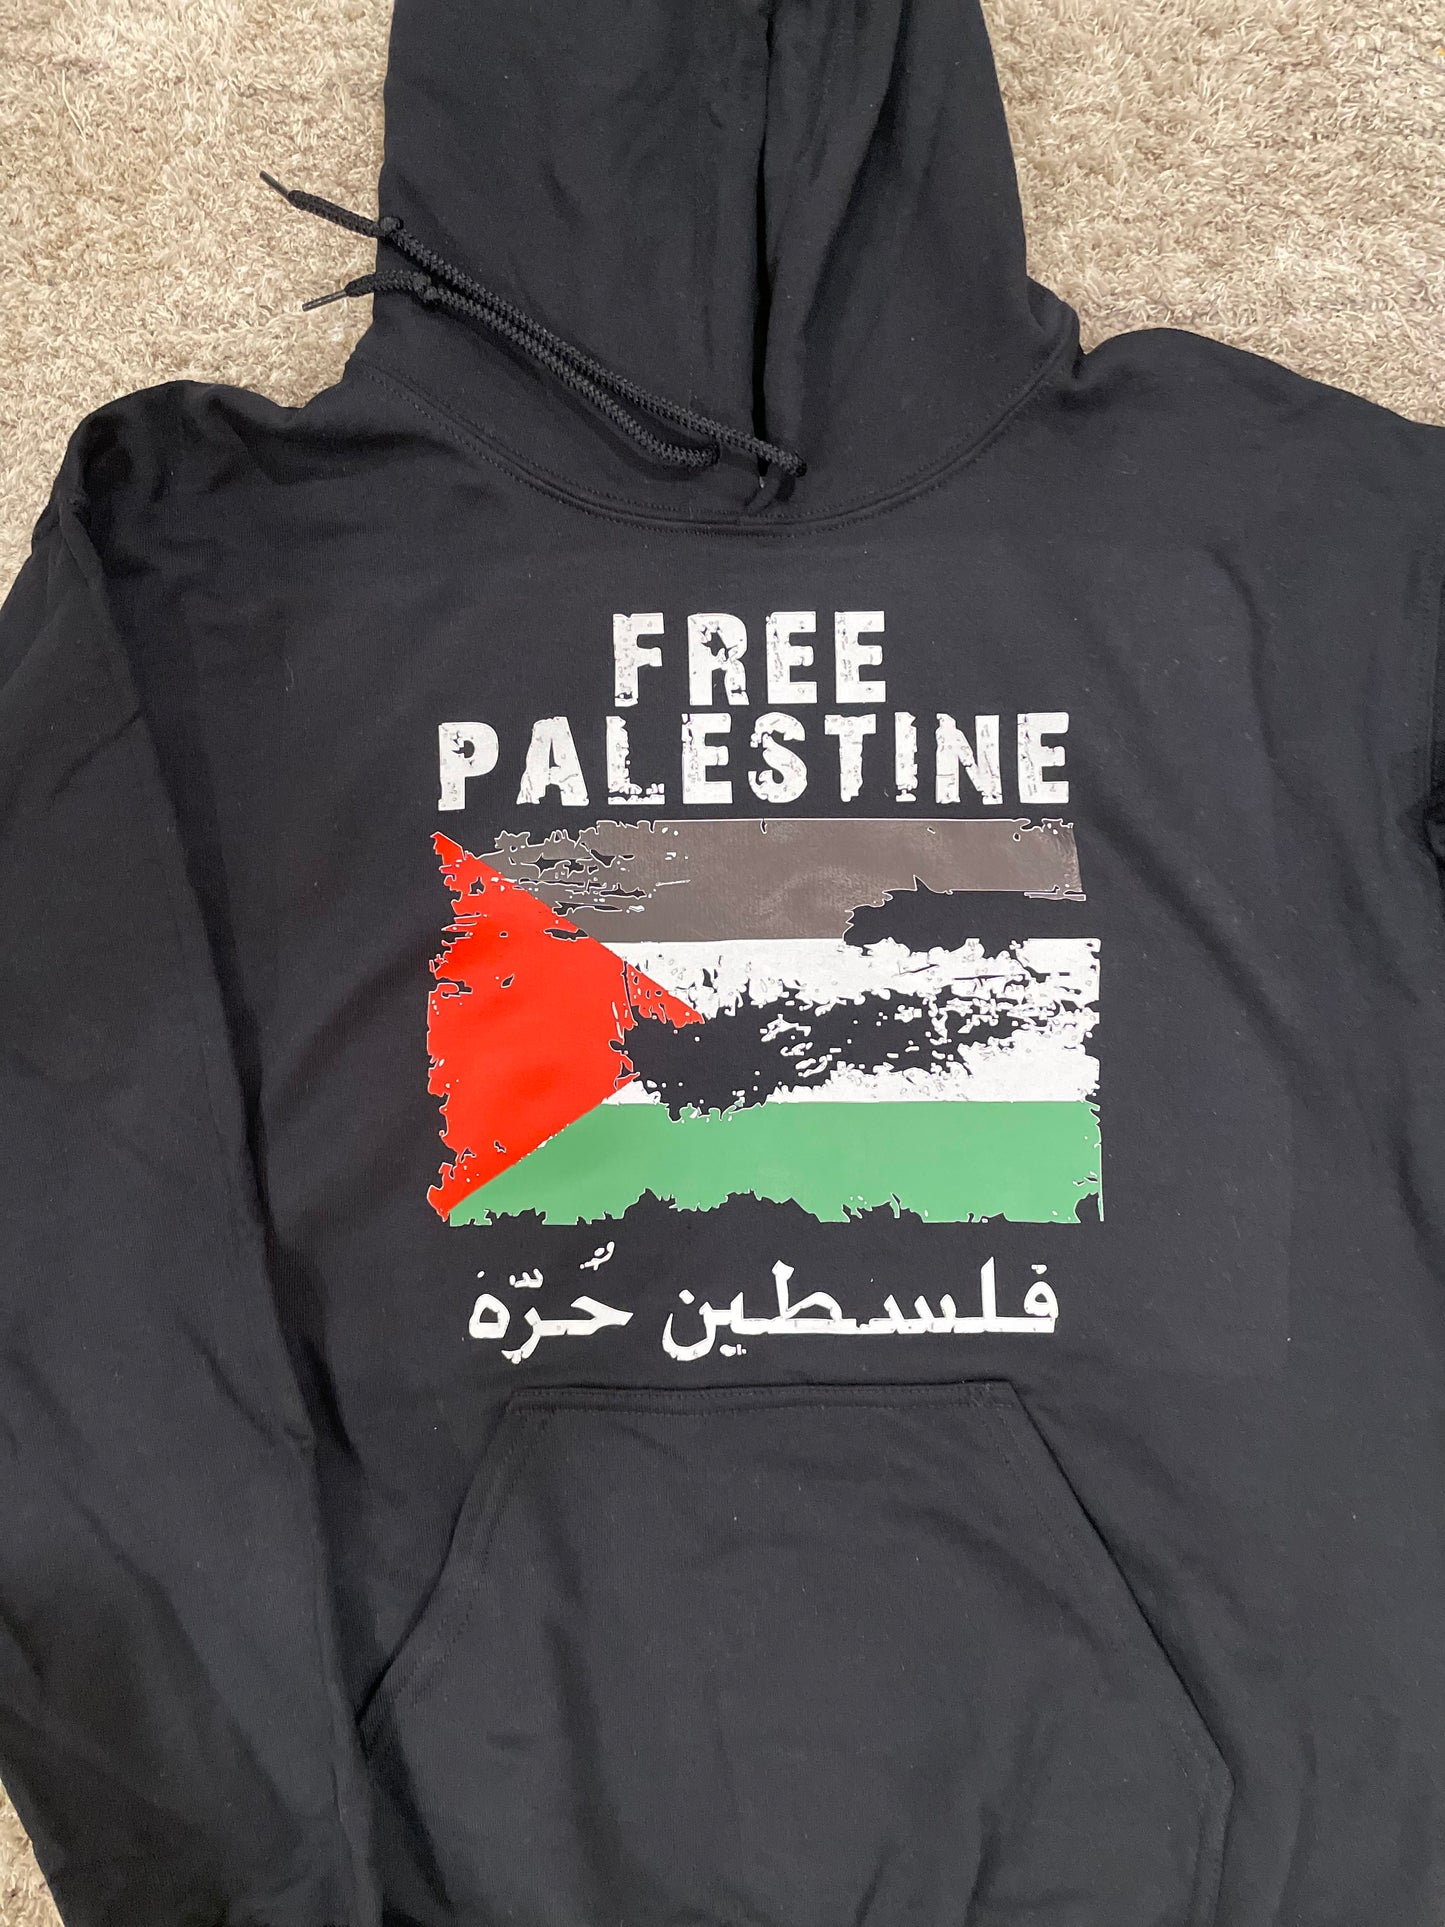 Free palestine Palestinian hoodie